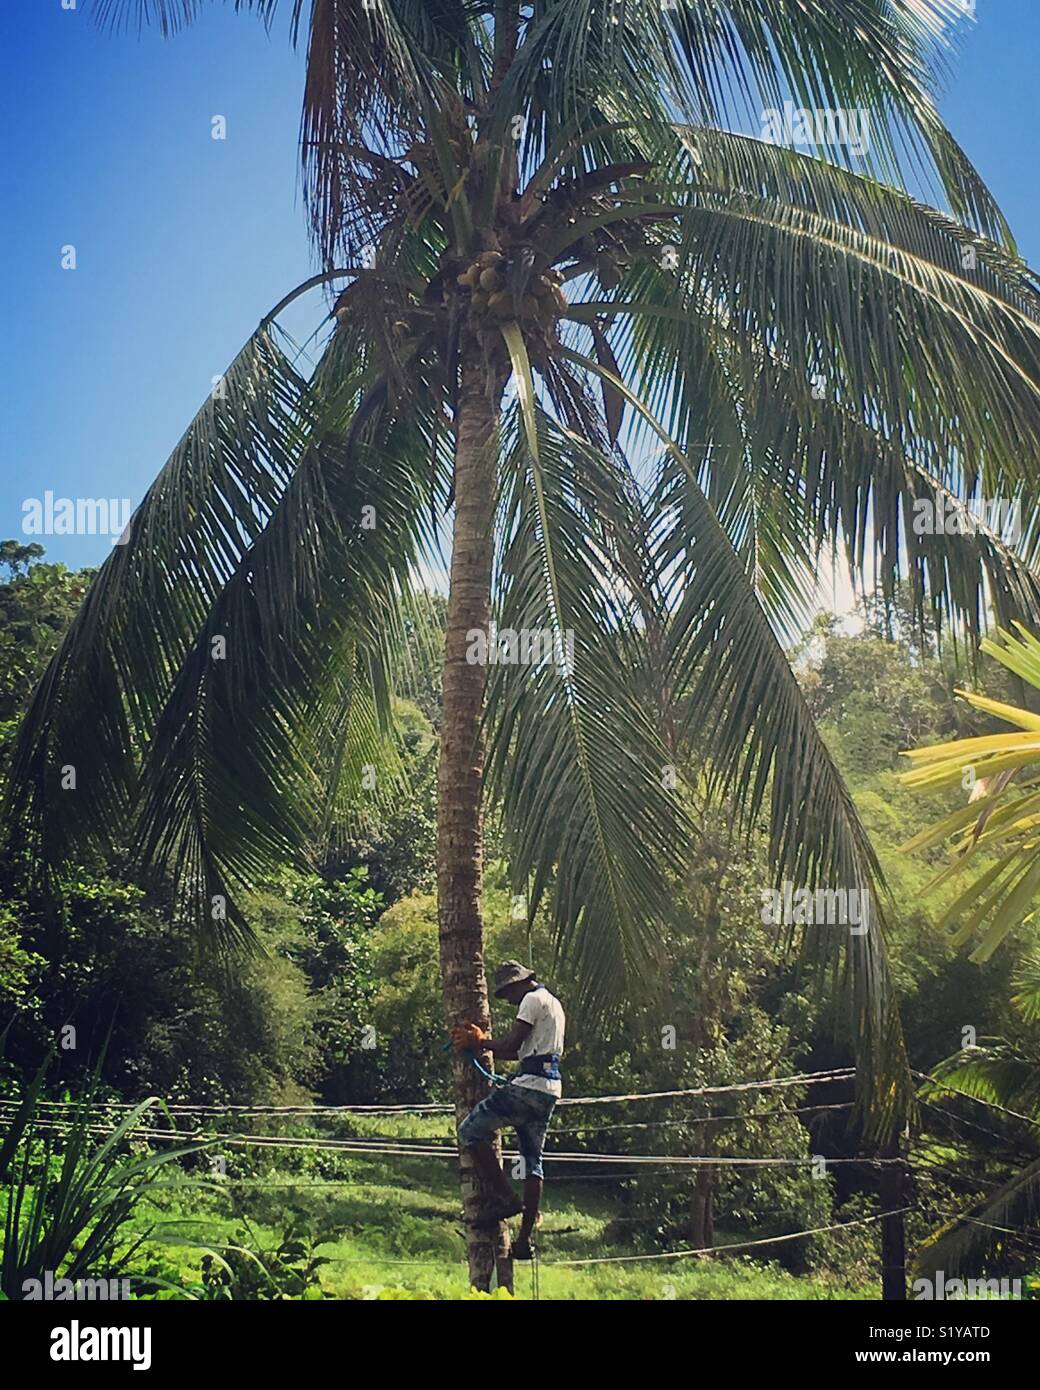 Man climbing coconut tree Stock Photo